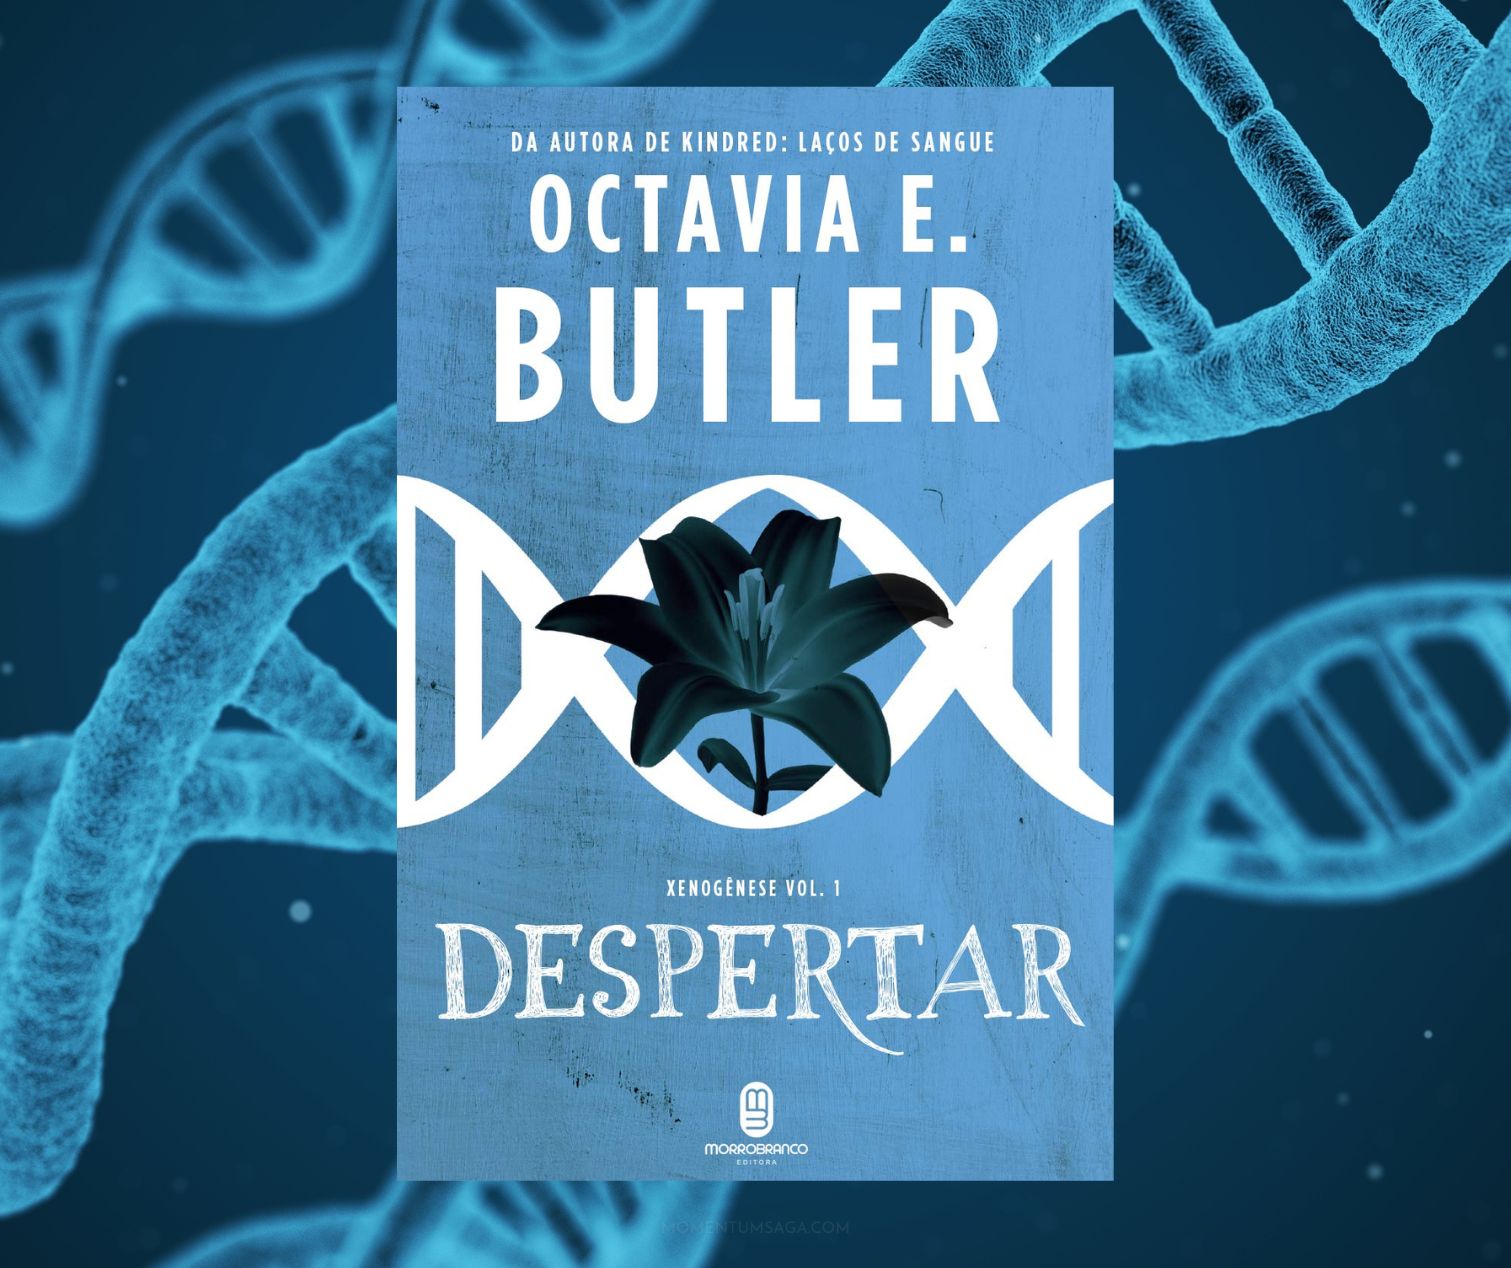 Resenha: Despertar, de Octavia Butler